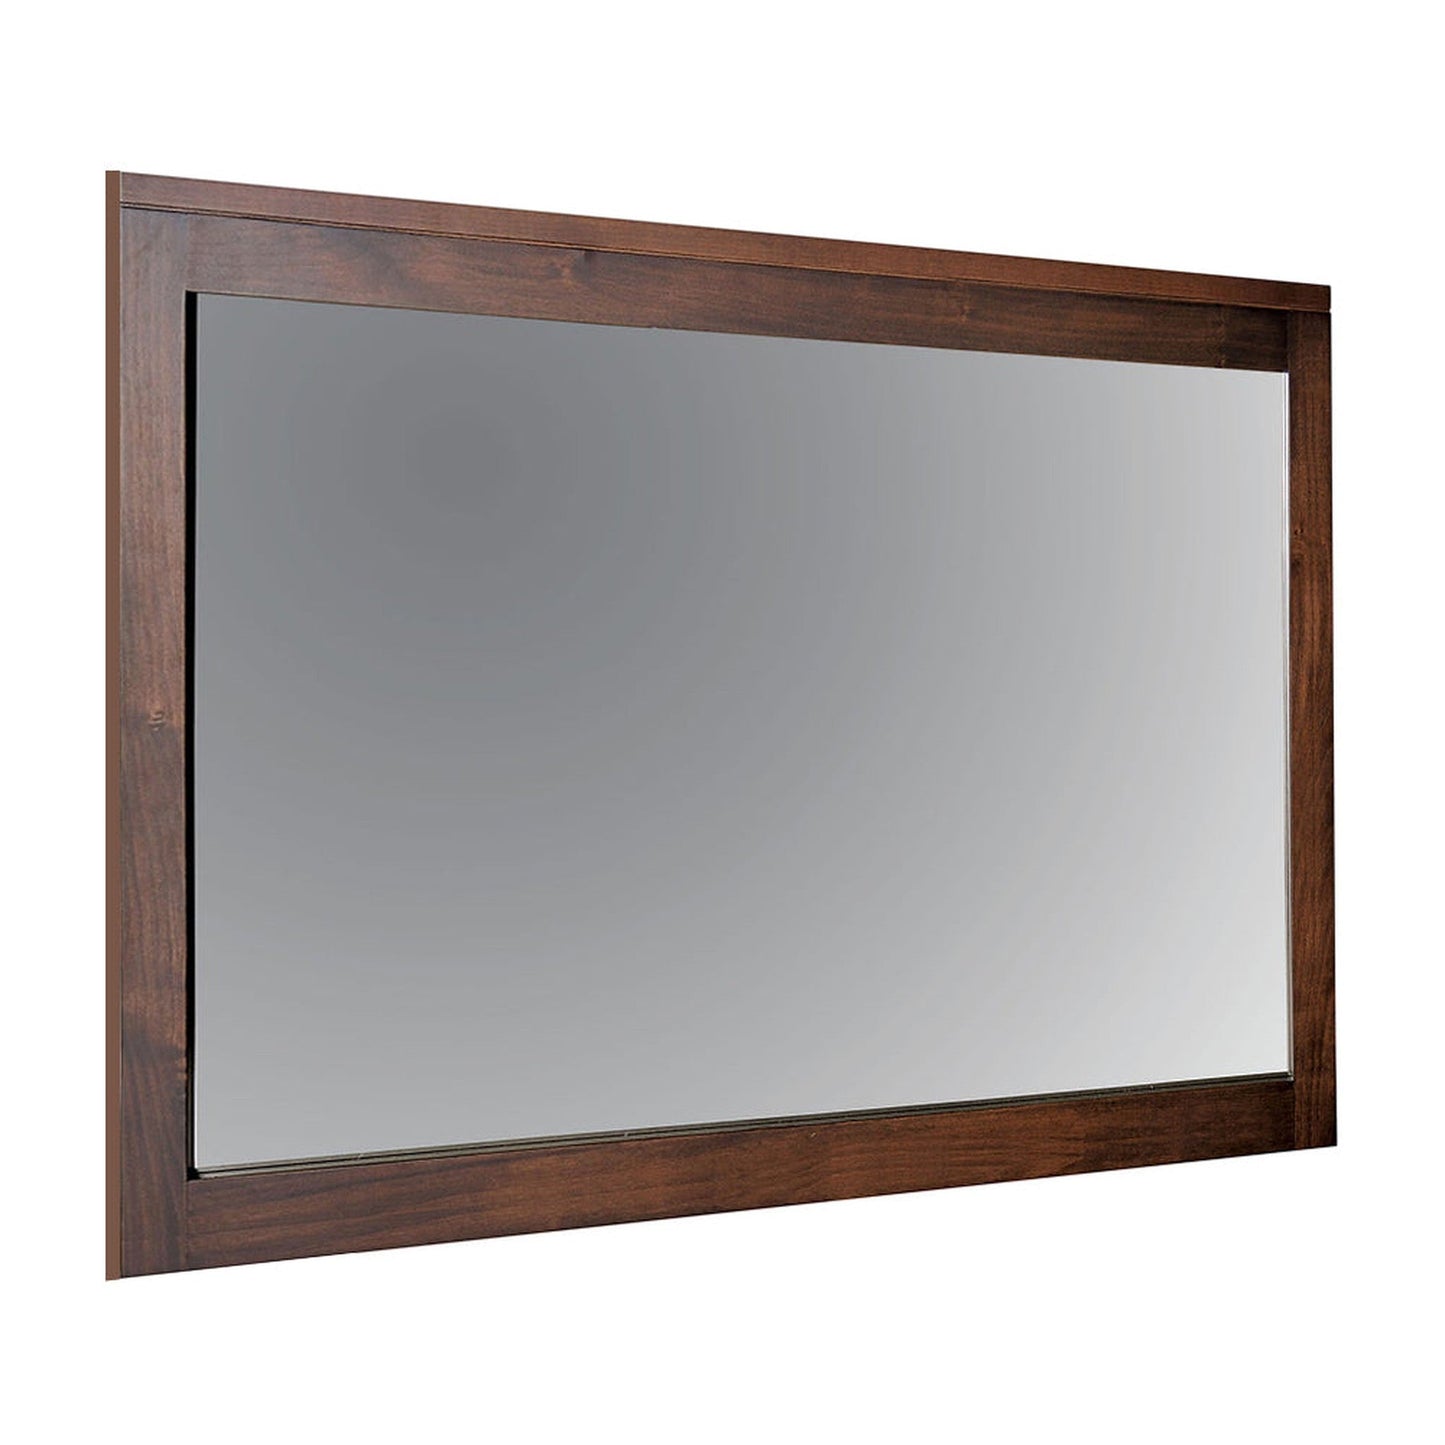 Benzara Brown Rectangular Wooden Frame Mirror With Mounting Hardwares